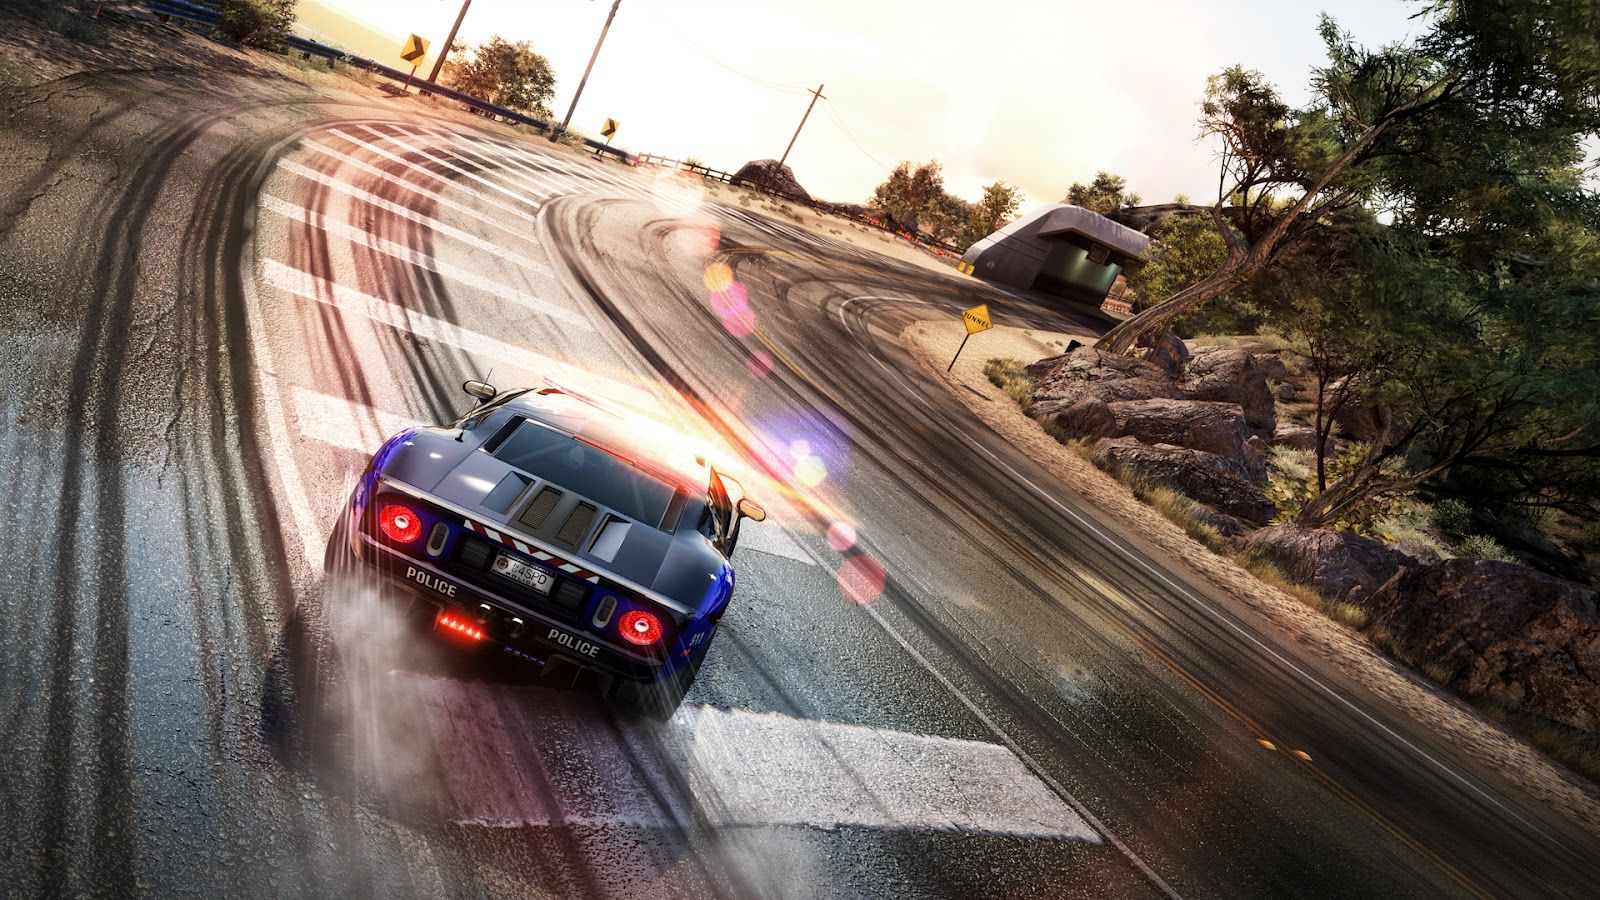 Need for Speed Rivals HD desktop wallpaper, Widescreen, High